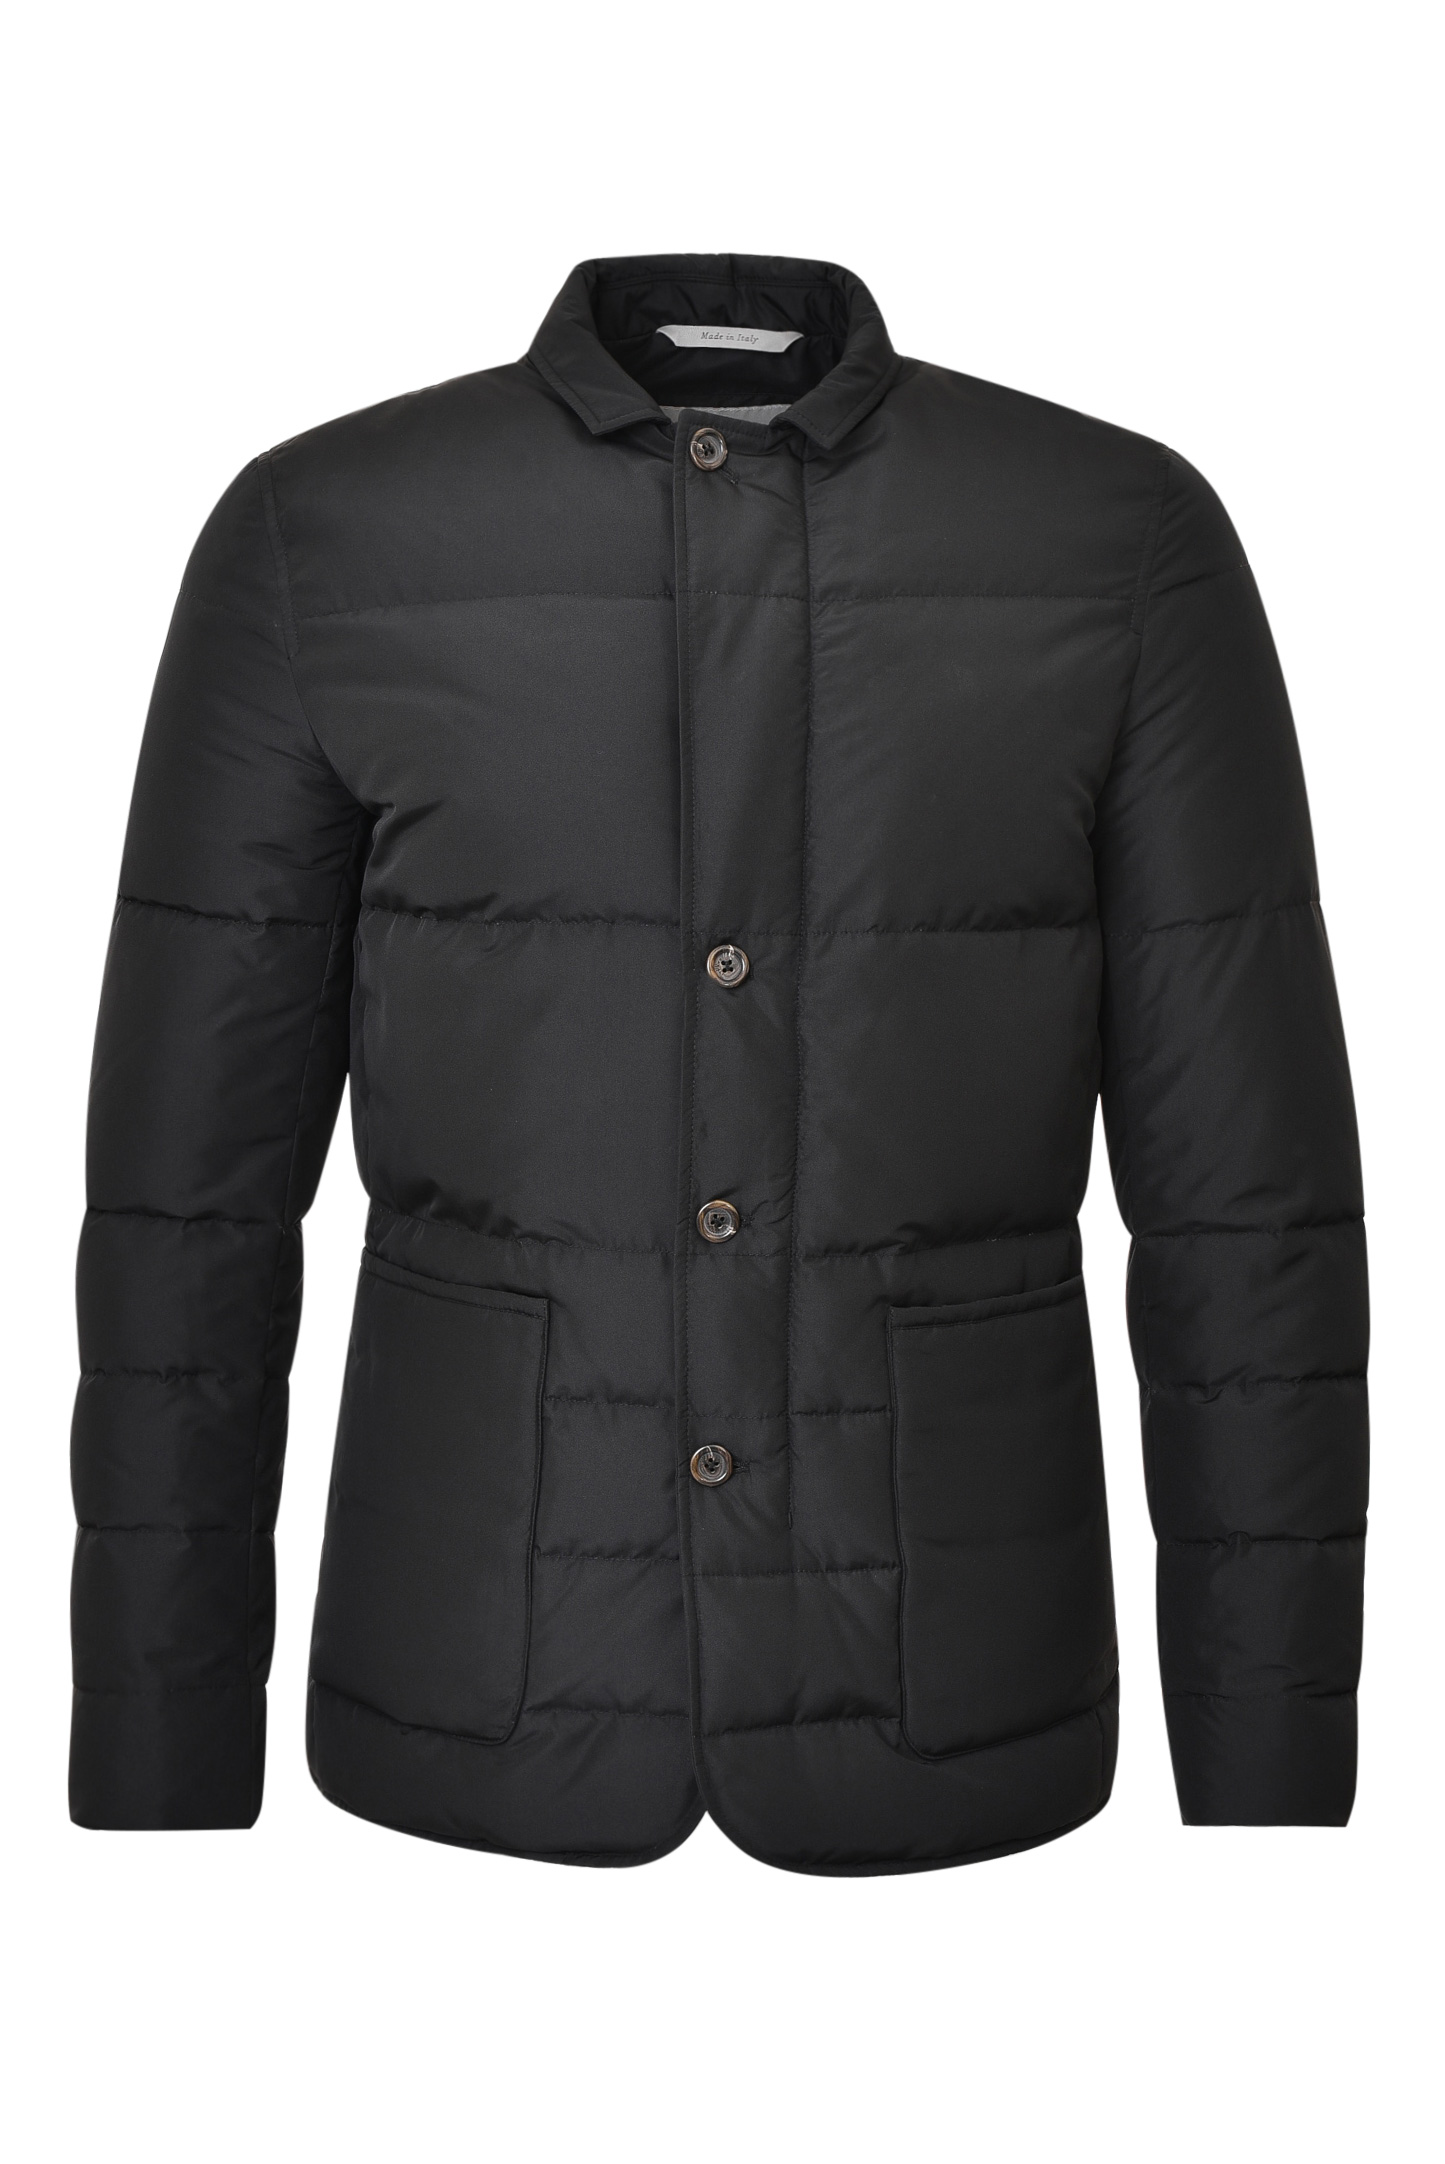 Куртка CANALI SG01718 O30340, цвет: Черный, Мужской